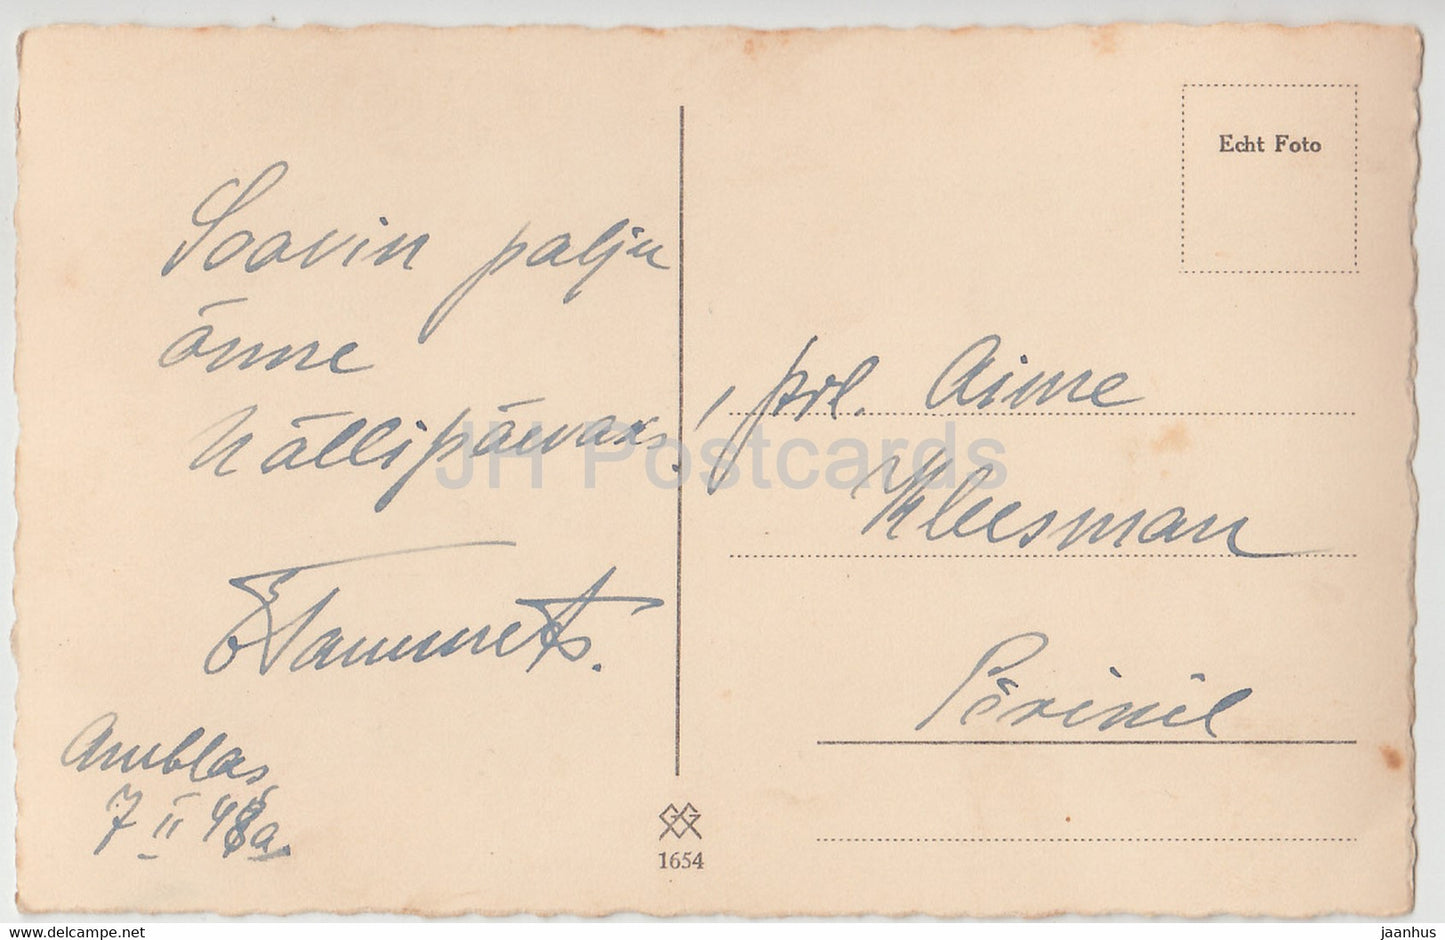 Frau – 1654 – 1948 – Deutschland – alte Postkarte – gebraucht